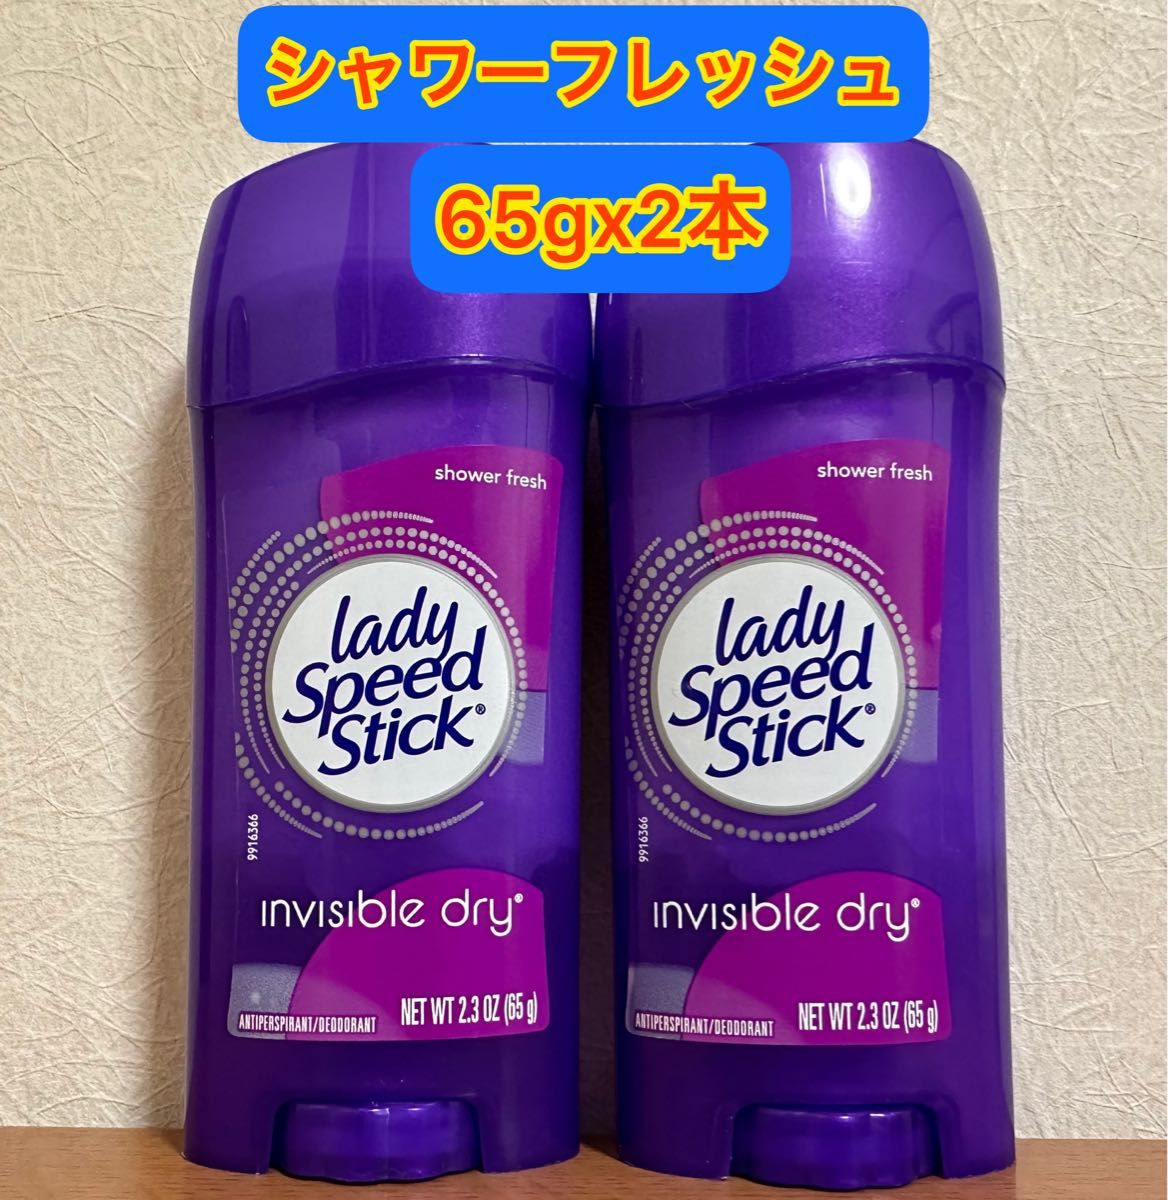 【65gx2本】レディスピードスティック シャワーフレッシュ オドラント 制汗剤